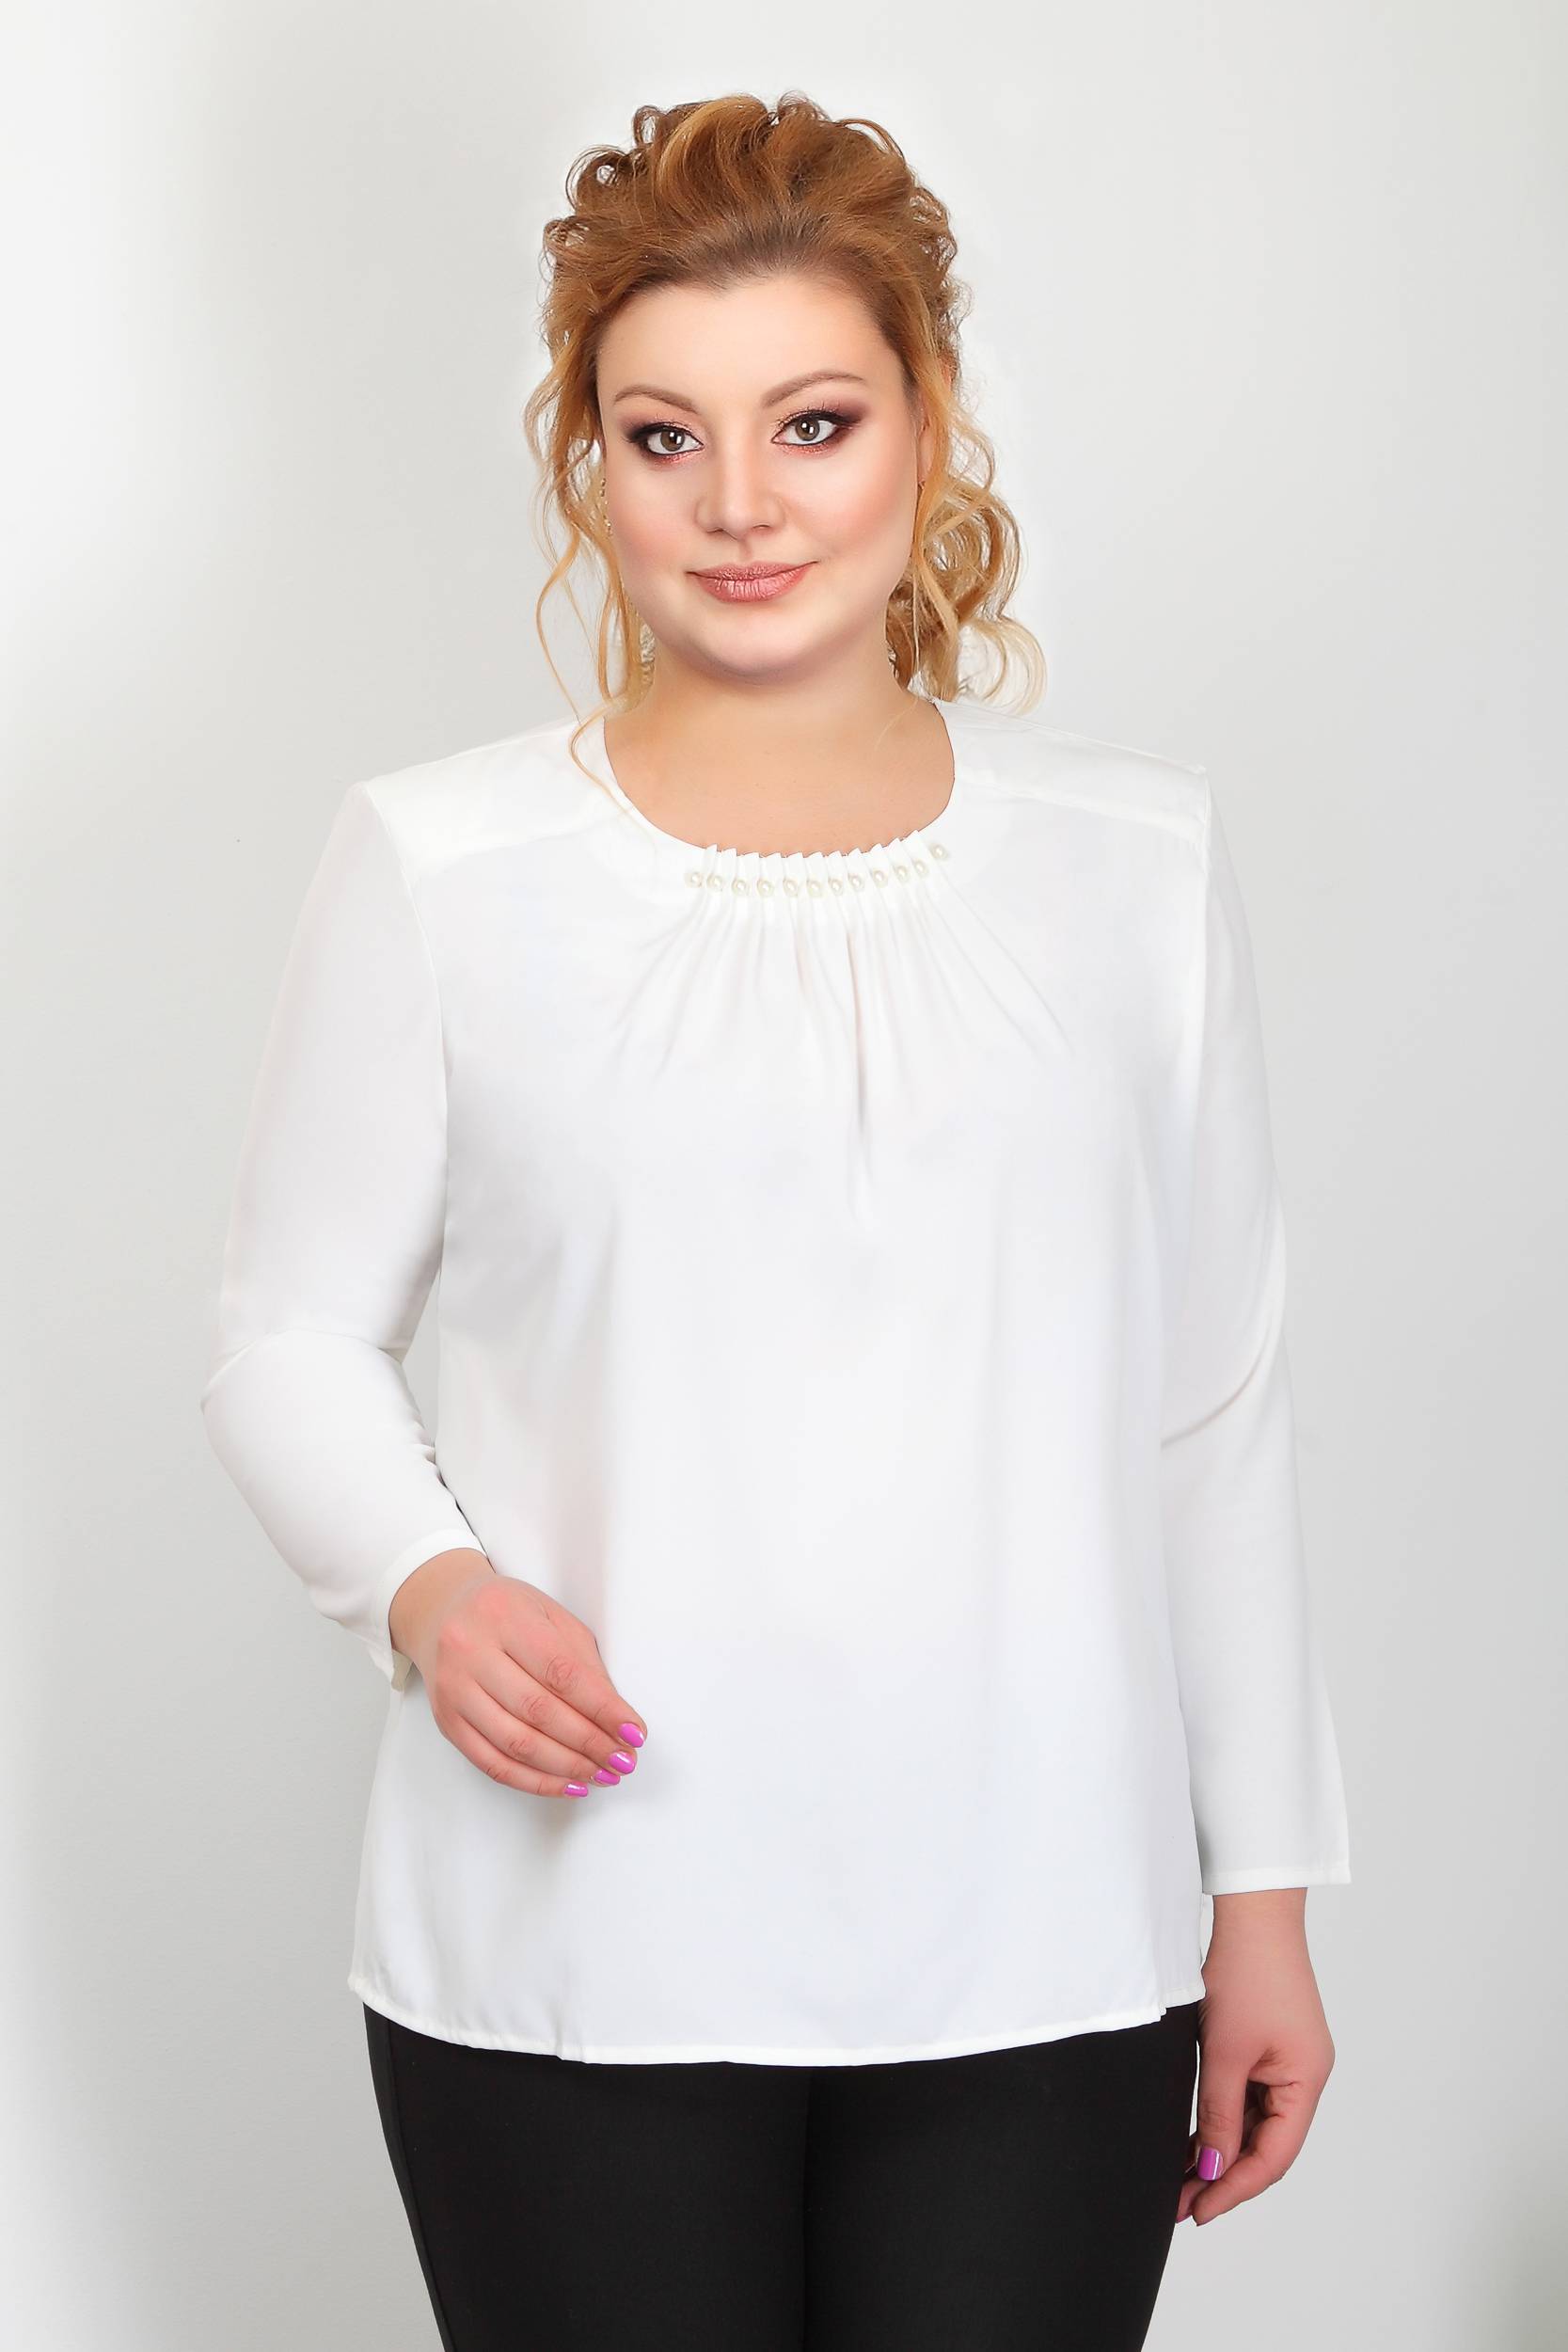 Стильные белые блузки для полных женщин